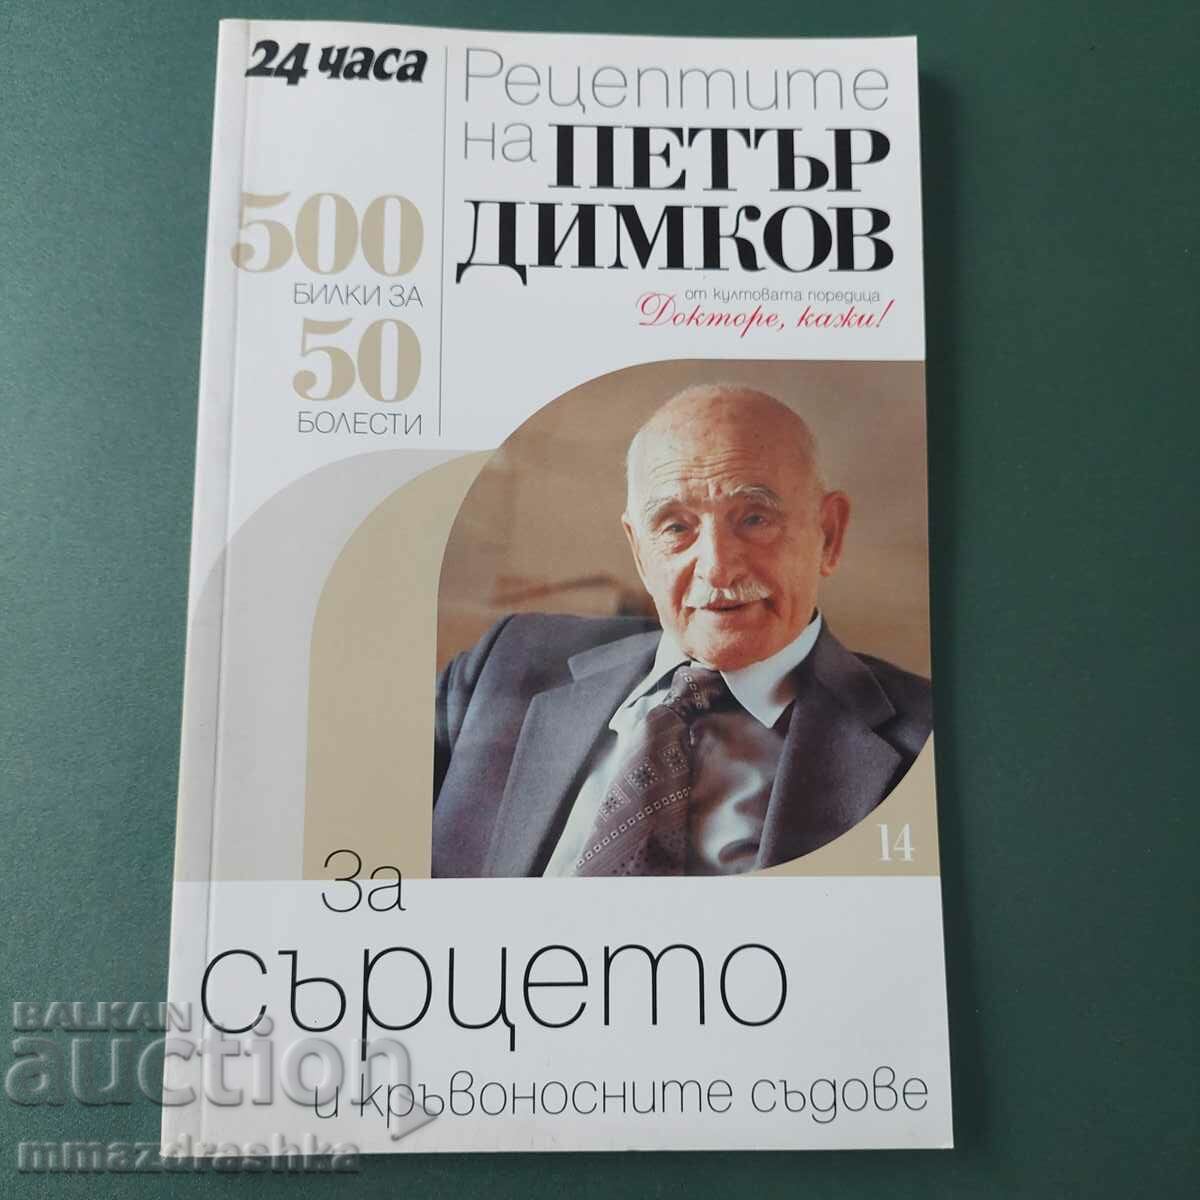 500 recipes for the heart, Petar Dimkov